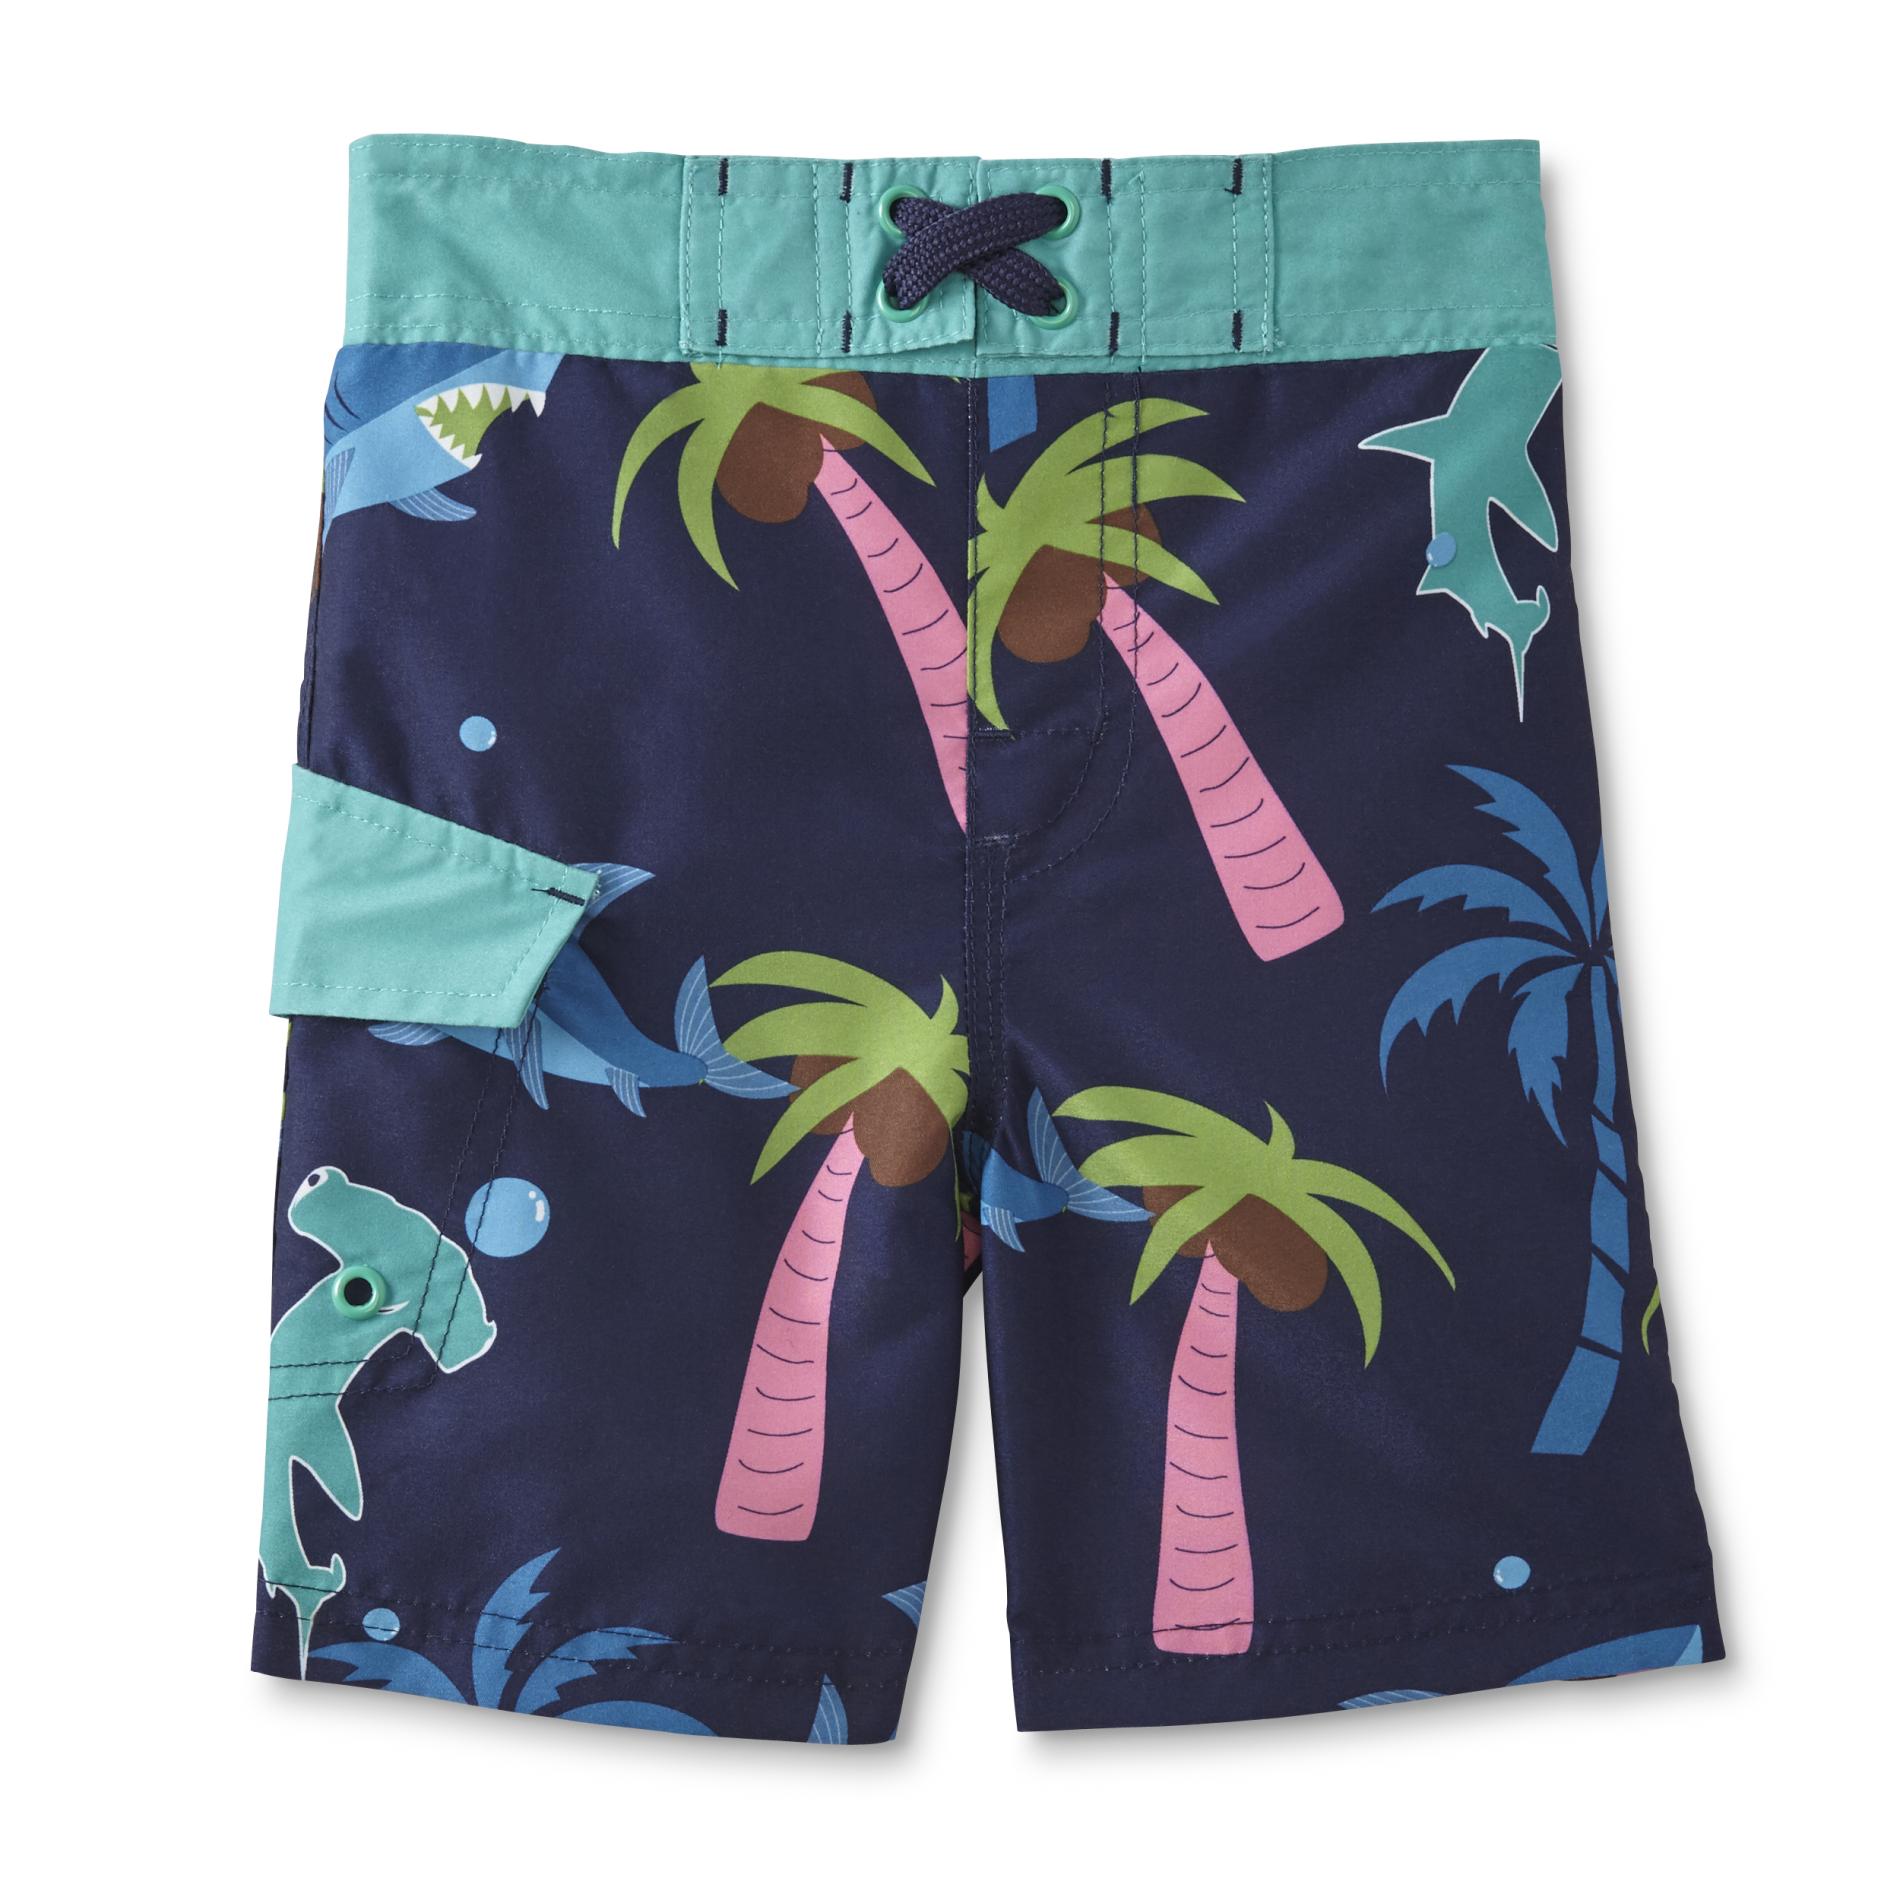 Joe Boxer Toddler Boys' Swim Trunks - Sharks & Palm Trees